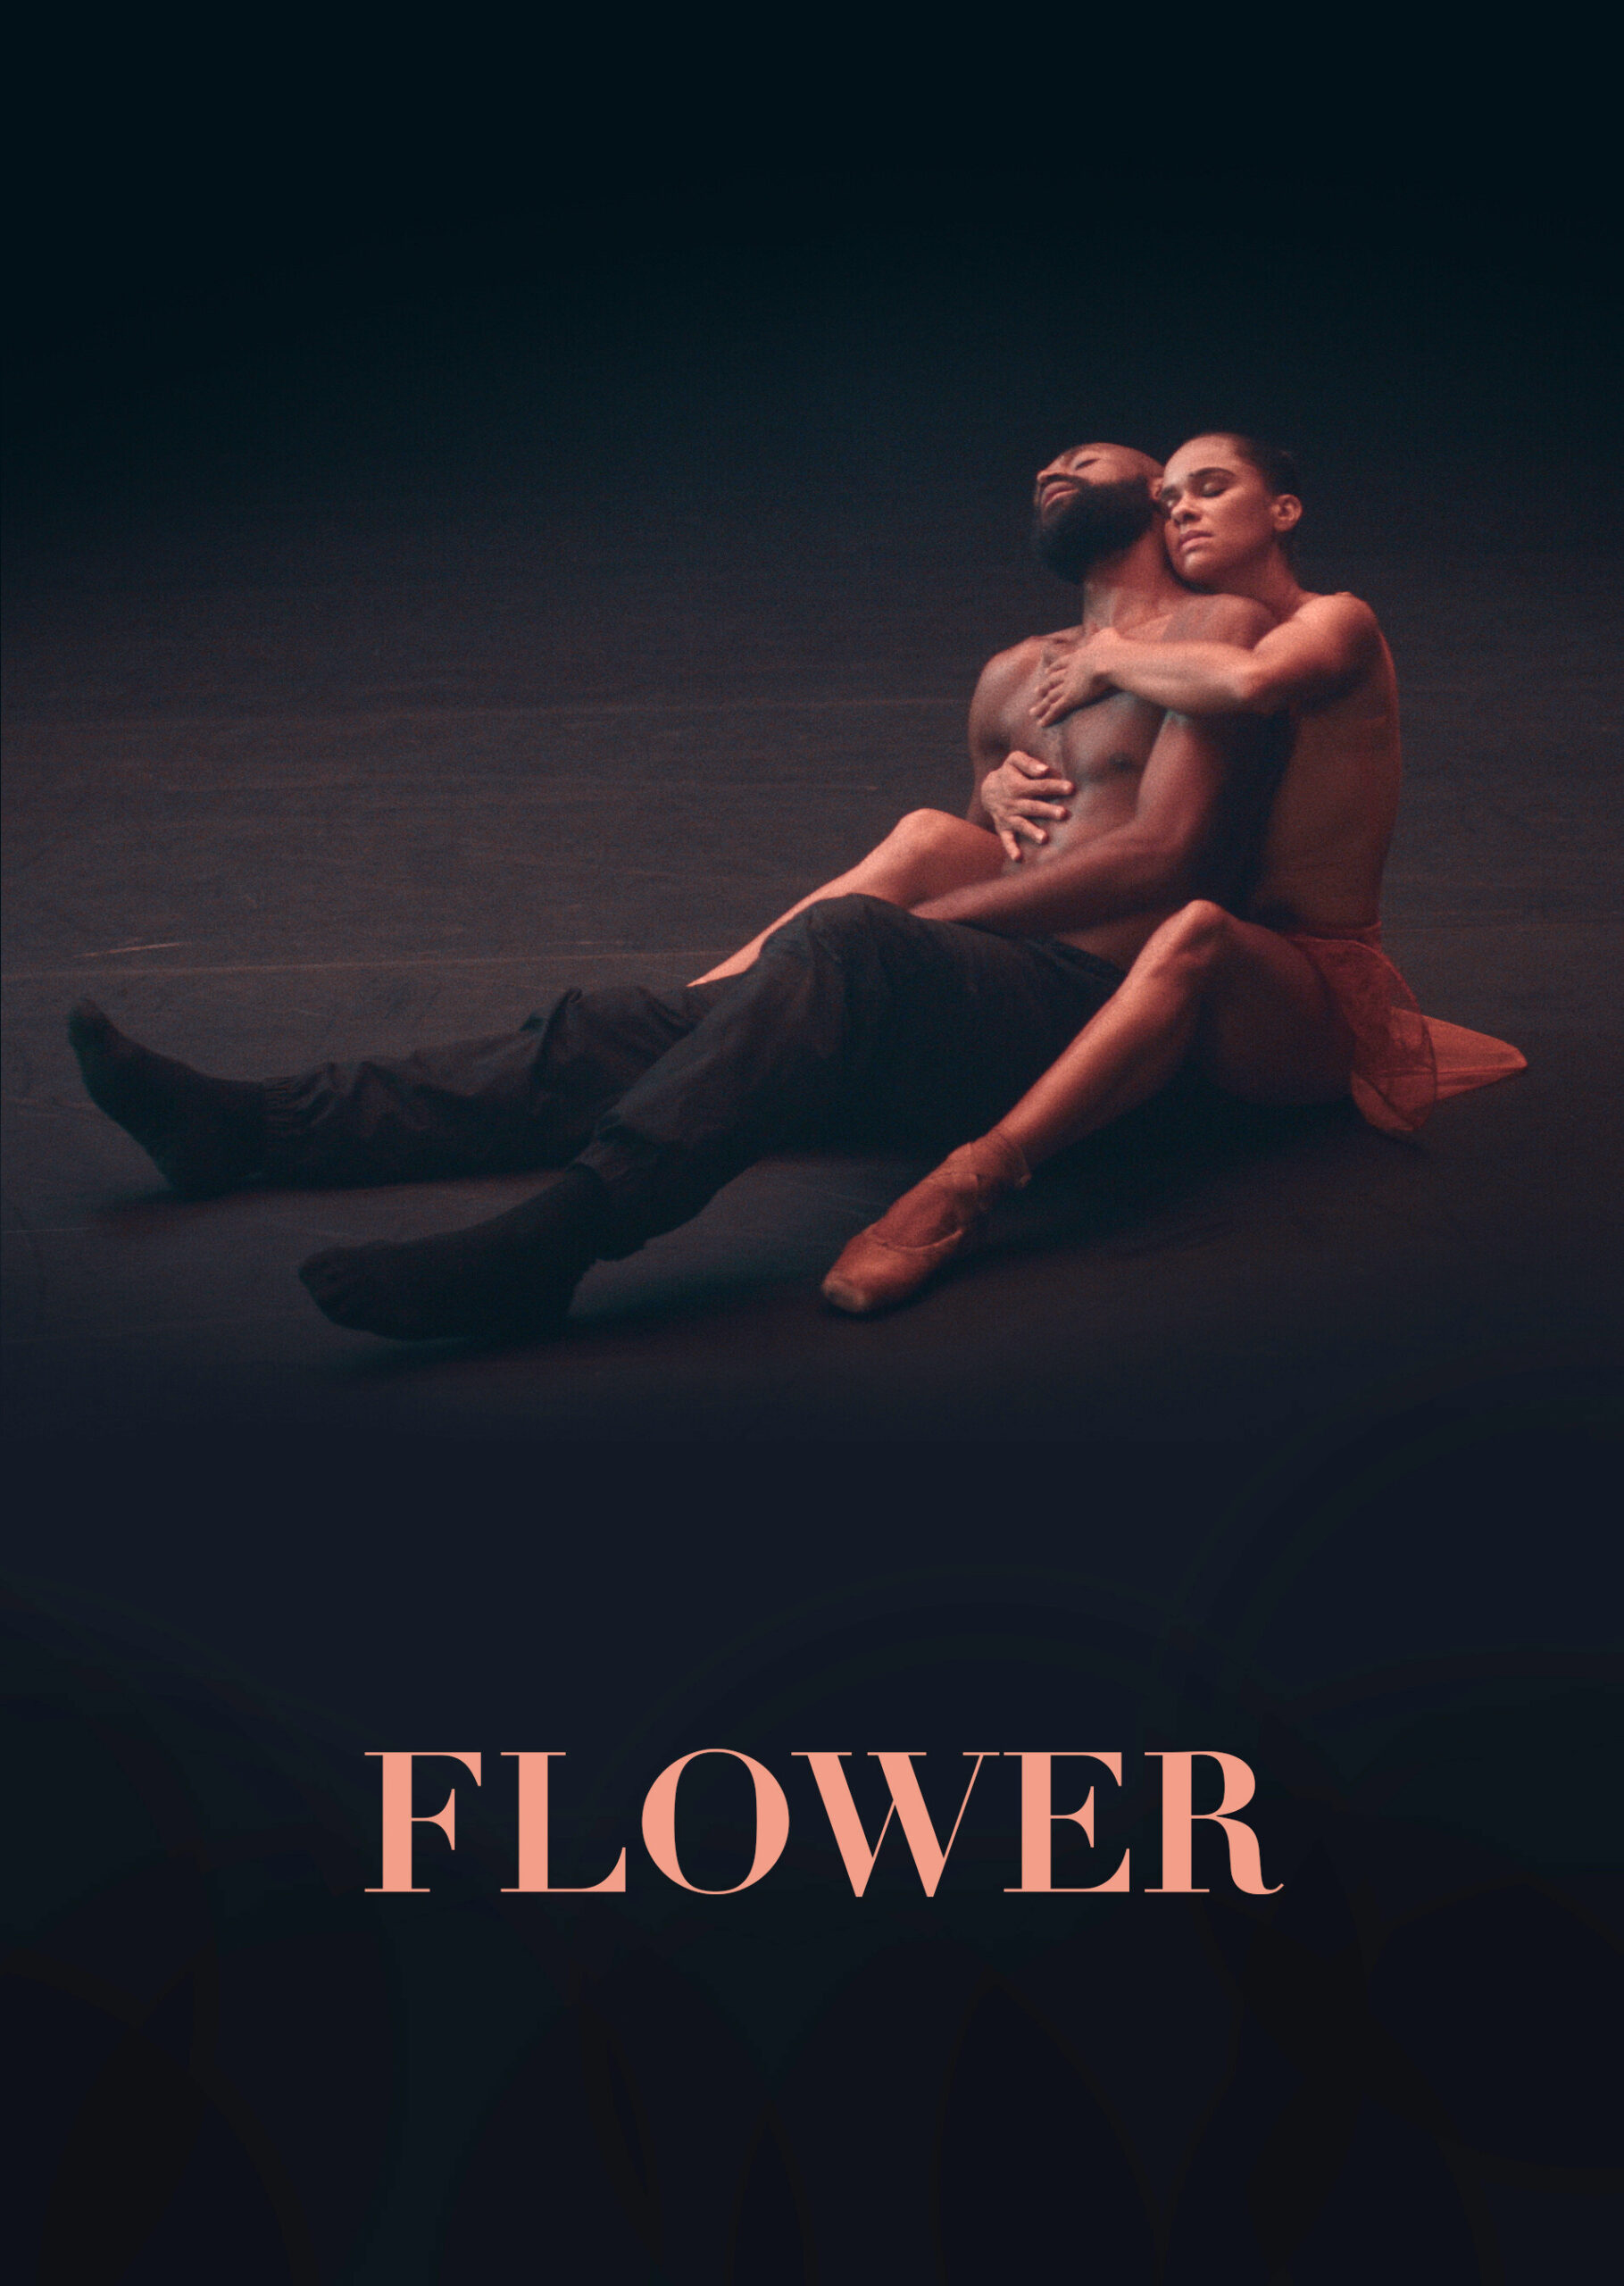 Cover for Flower the short film